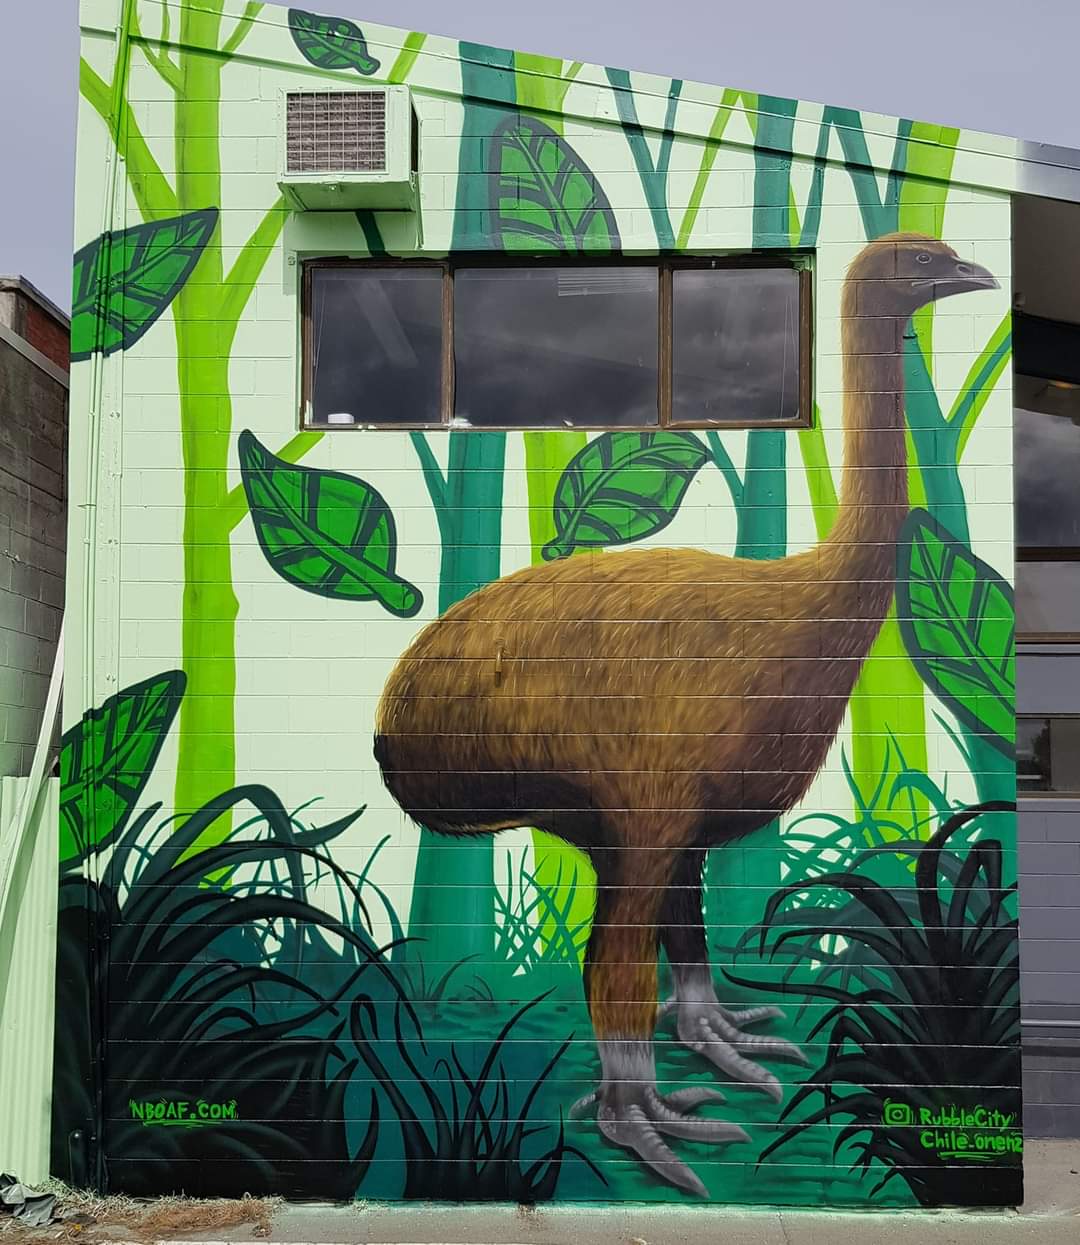 Mural of Moa bird